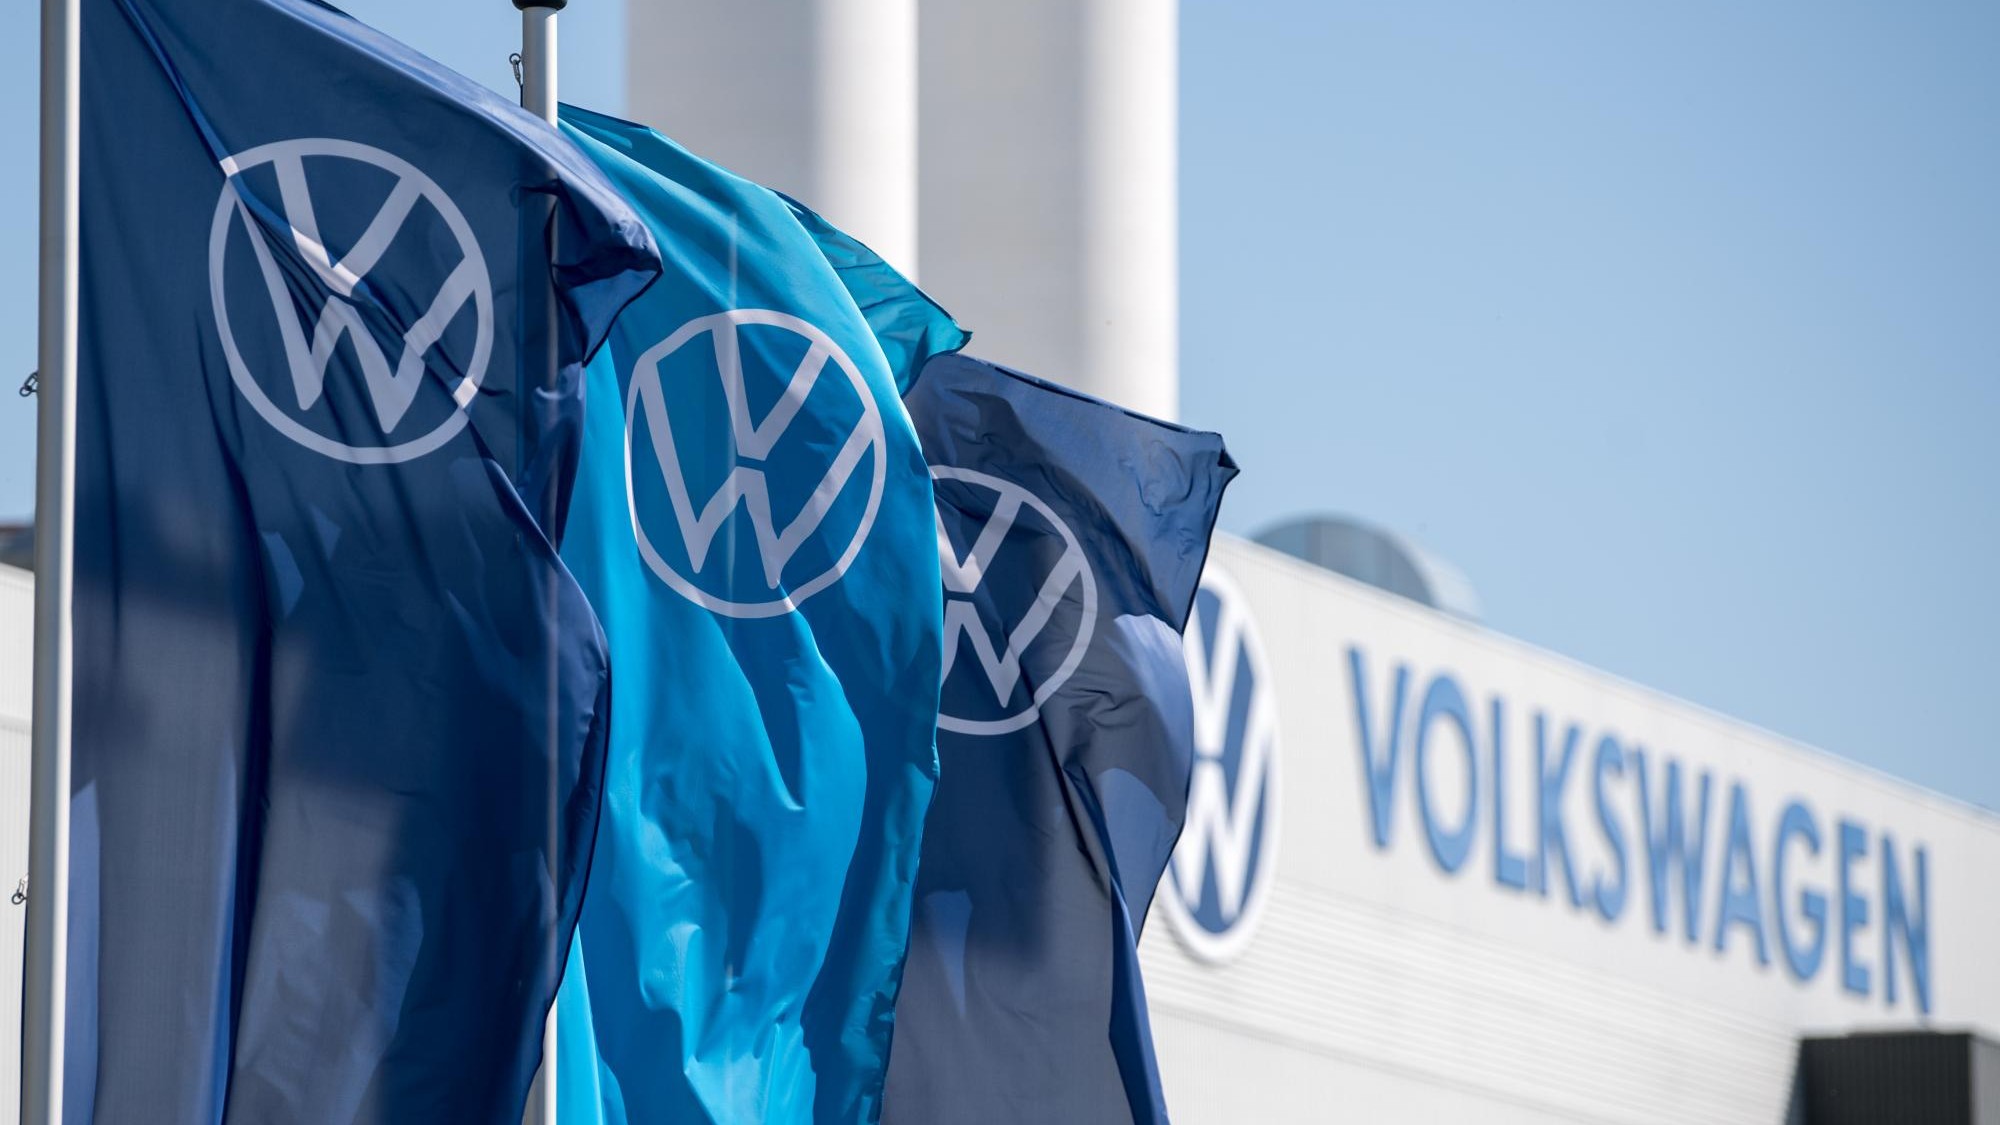 Reaktion auf BGH-Urteil - Volkswagen prüft Gehälter etlicher Betriebsräte